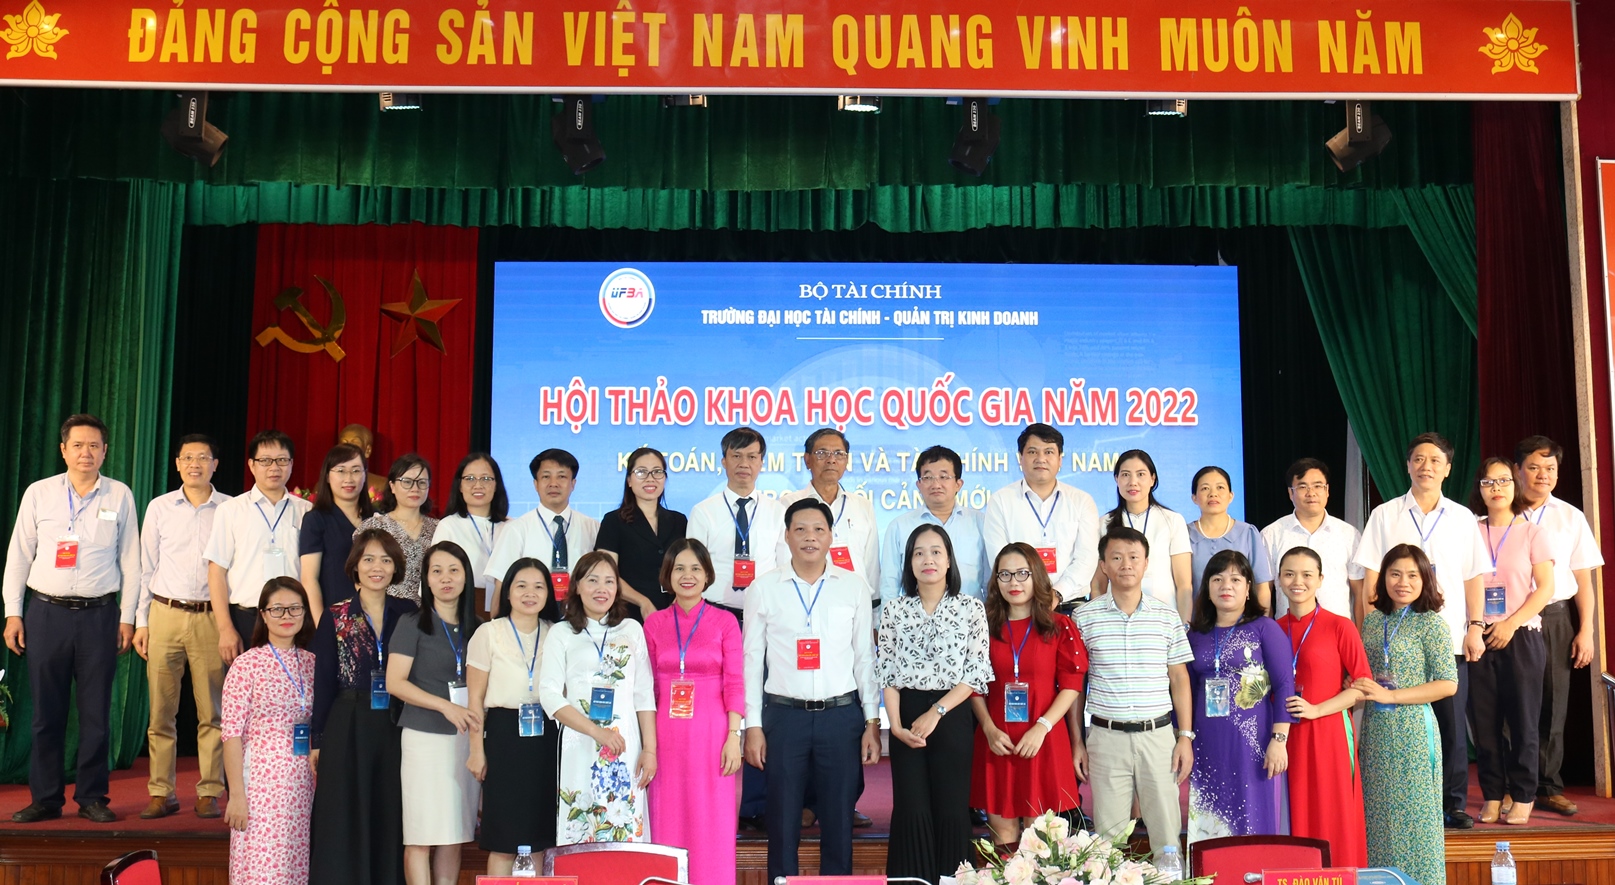 Hội thảo khoa học Quốc gia năm 2022: "Kế toán, Kiểm toán và Tài chính Việt Nam trong bối cảnh mới”